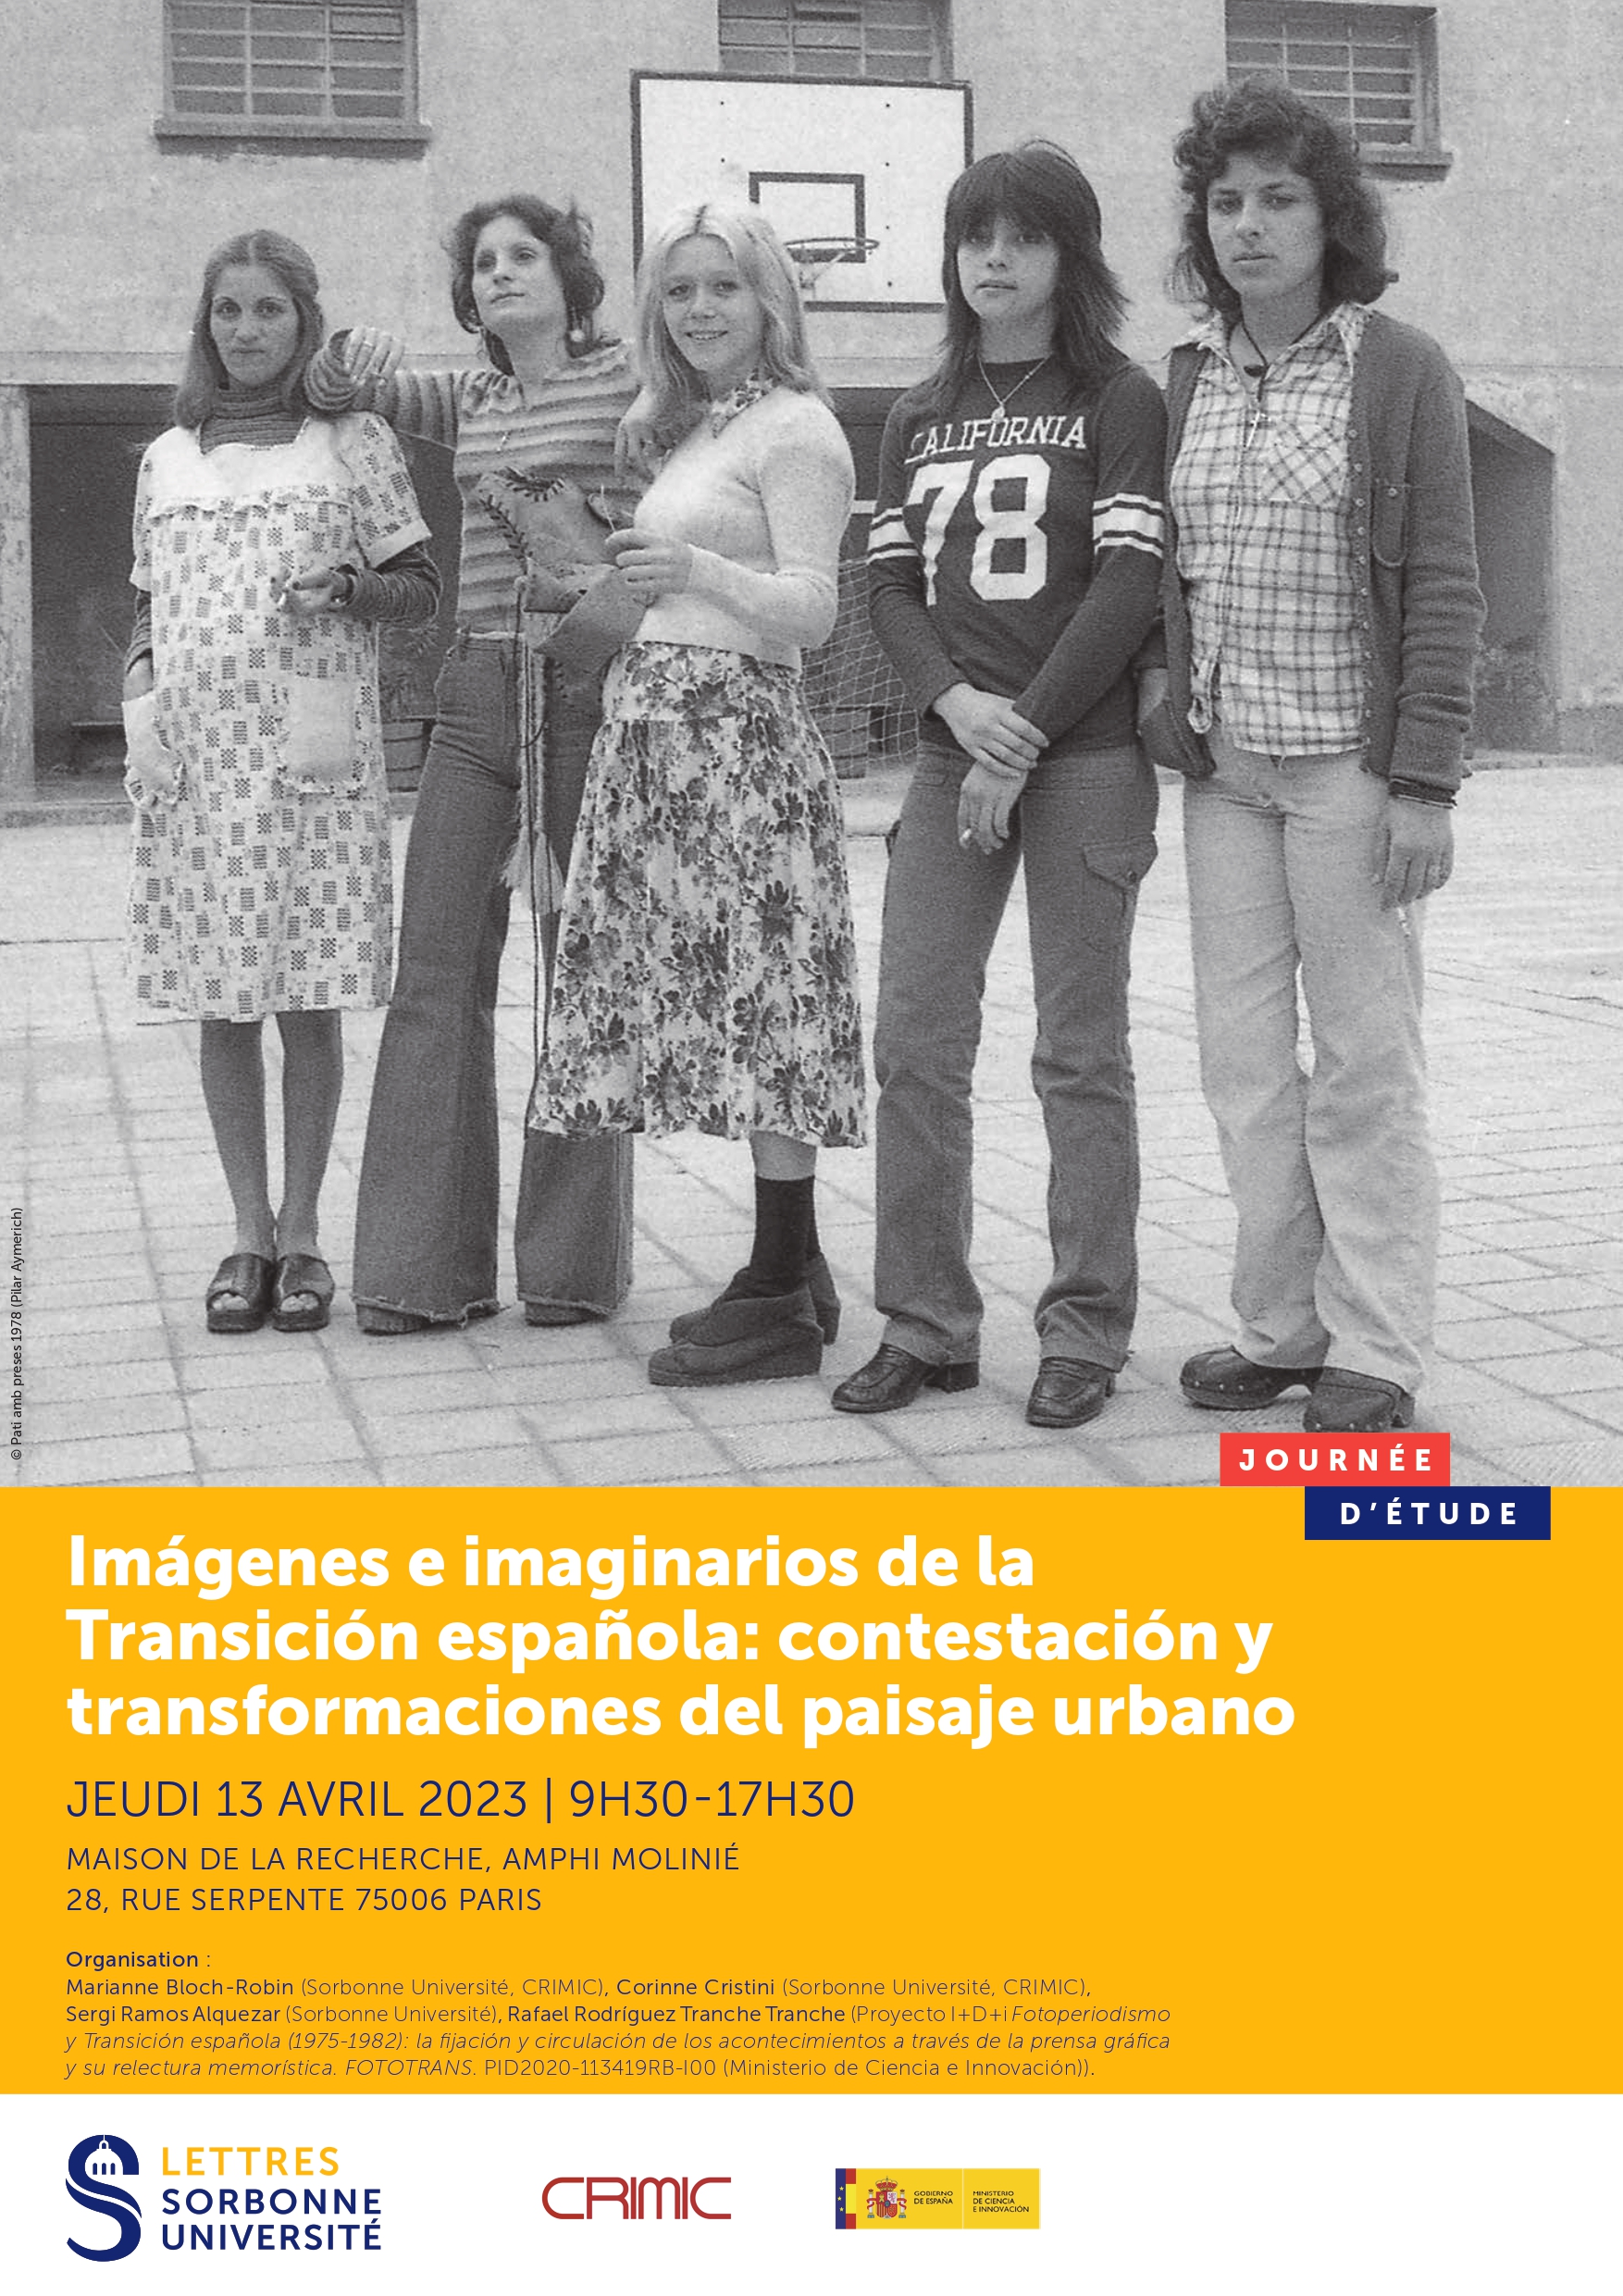 Imágenes e imaginarios de la Transición española: contestación y transformaciones del paisaje urbano